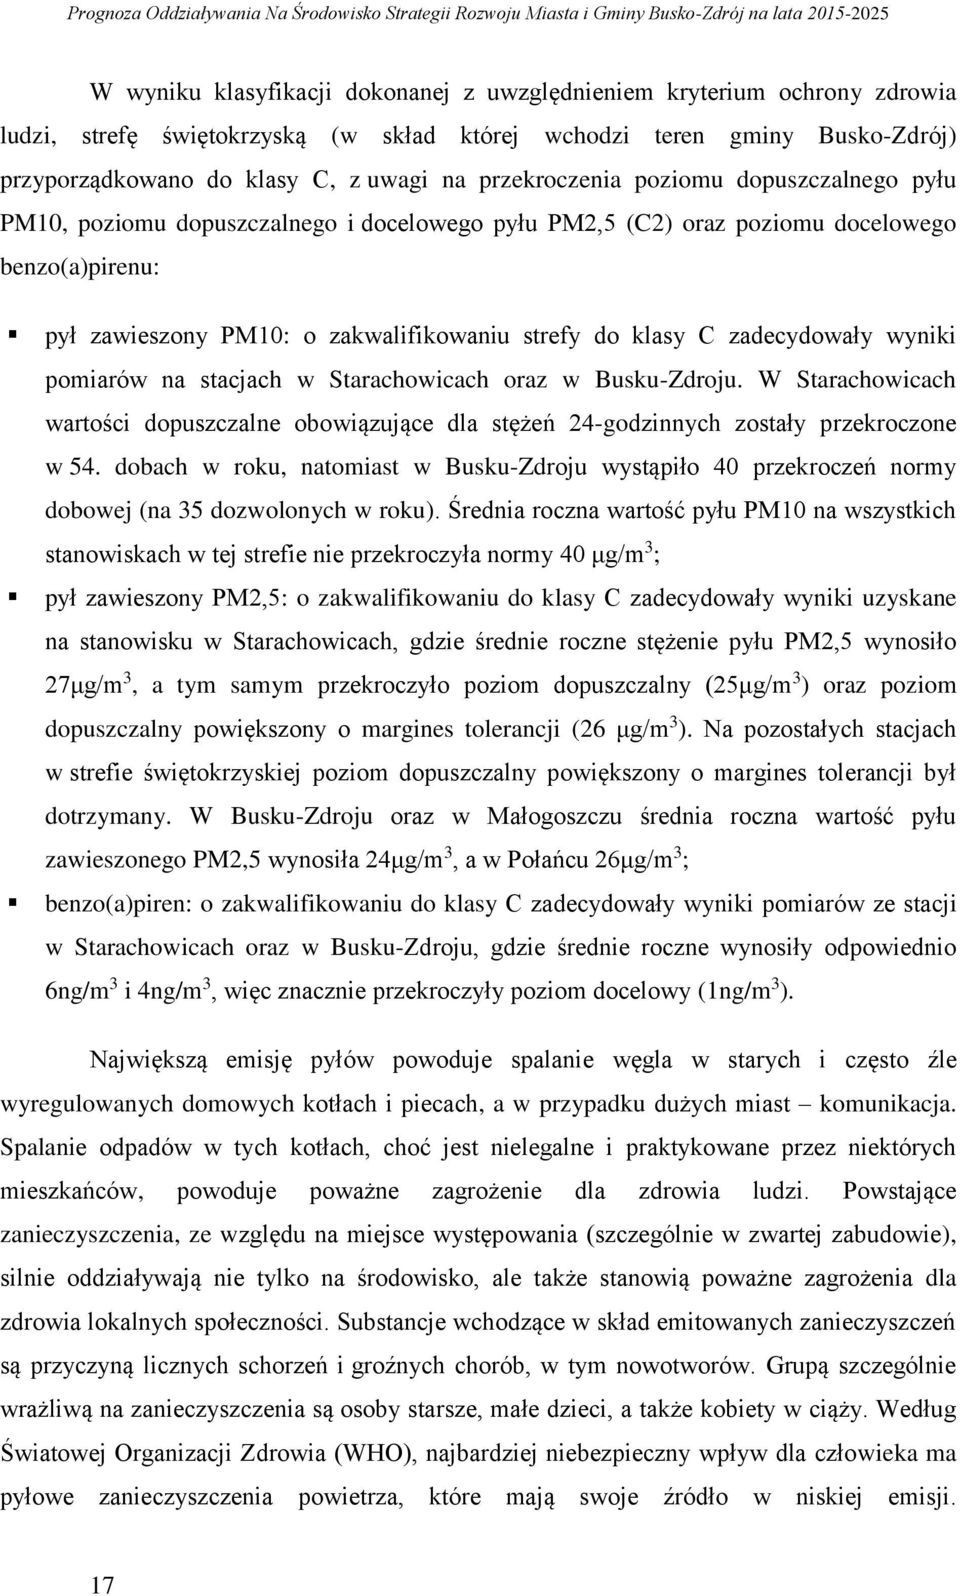 zadecydowały wyniki pomiarów na stacjach w Starachowicach oraz w Busku-Zdroju. W Starachowicach wartości dopuszczalne obowiązujące dla stężeń 24-godzinnych zostały przekroczone w 54.